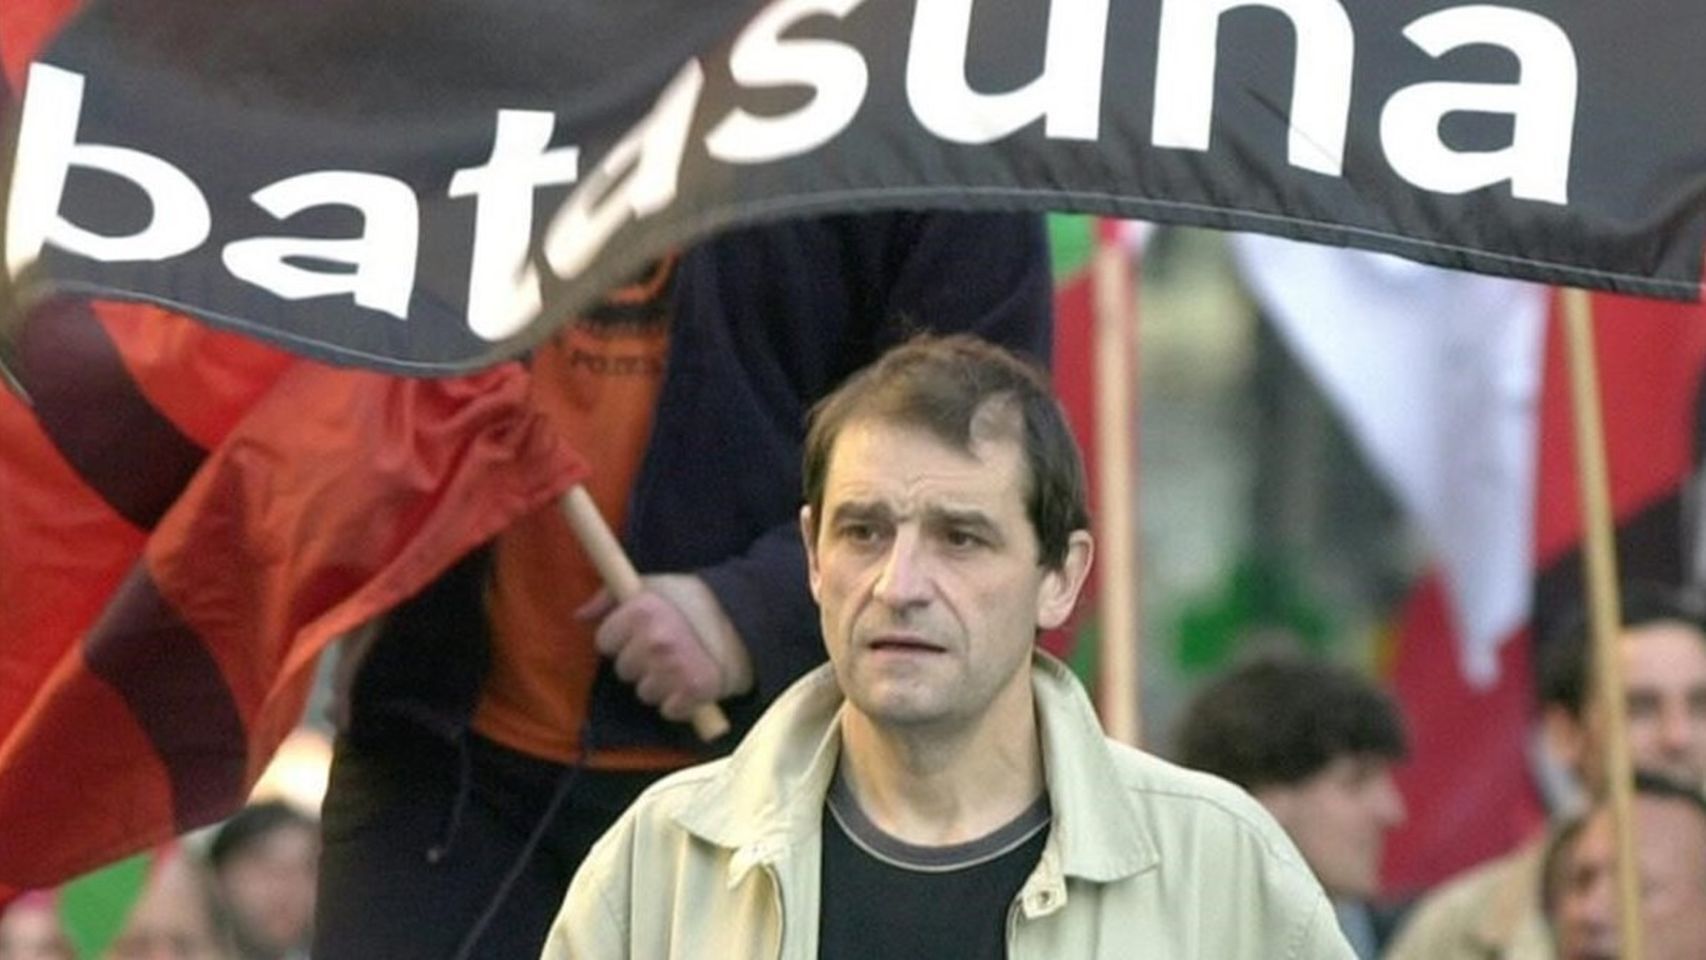 Josu Ternera, en una imagen de abril del 2002, en Bilbao, el día en que el juez ordenó su detención por el atentado en la casa cuartel de la Guardia Civil de Zaragoza en 1987.